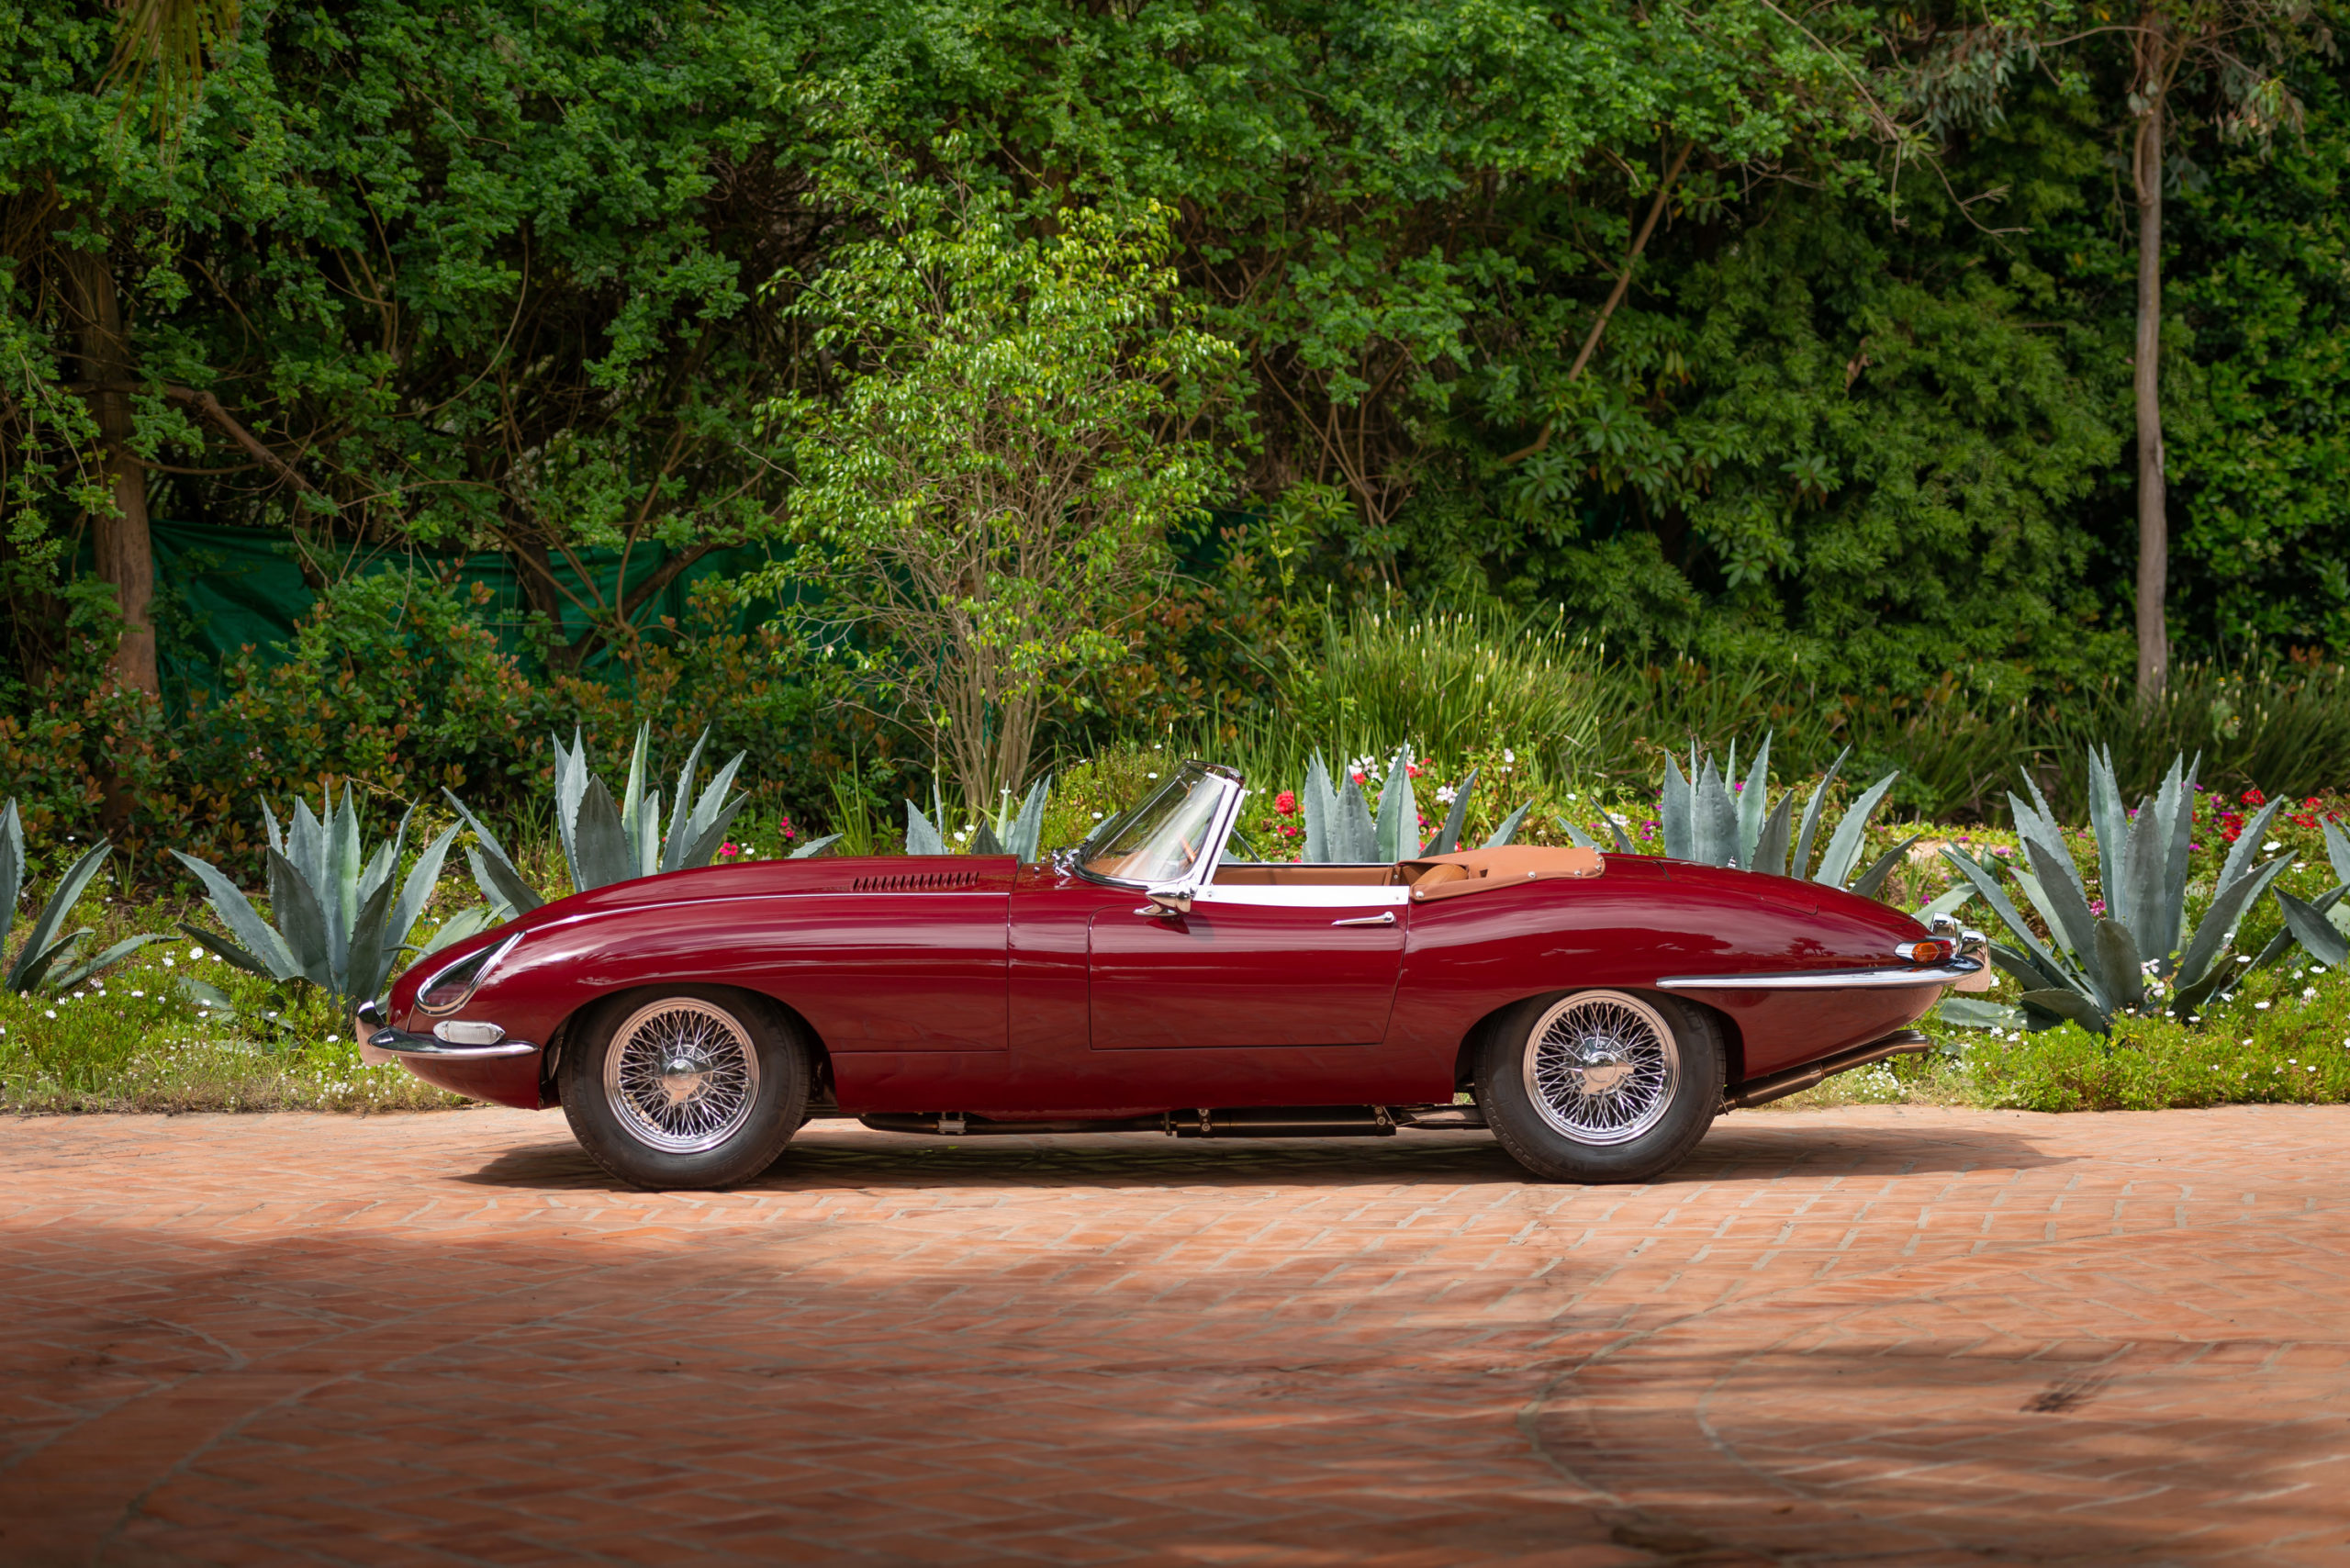 1964 Jaguar E-Type Series 1 Custom by Bouillot Helsel Sold For $85,800